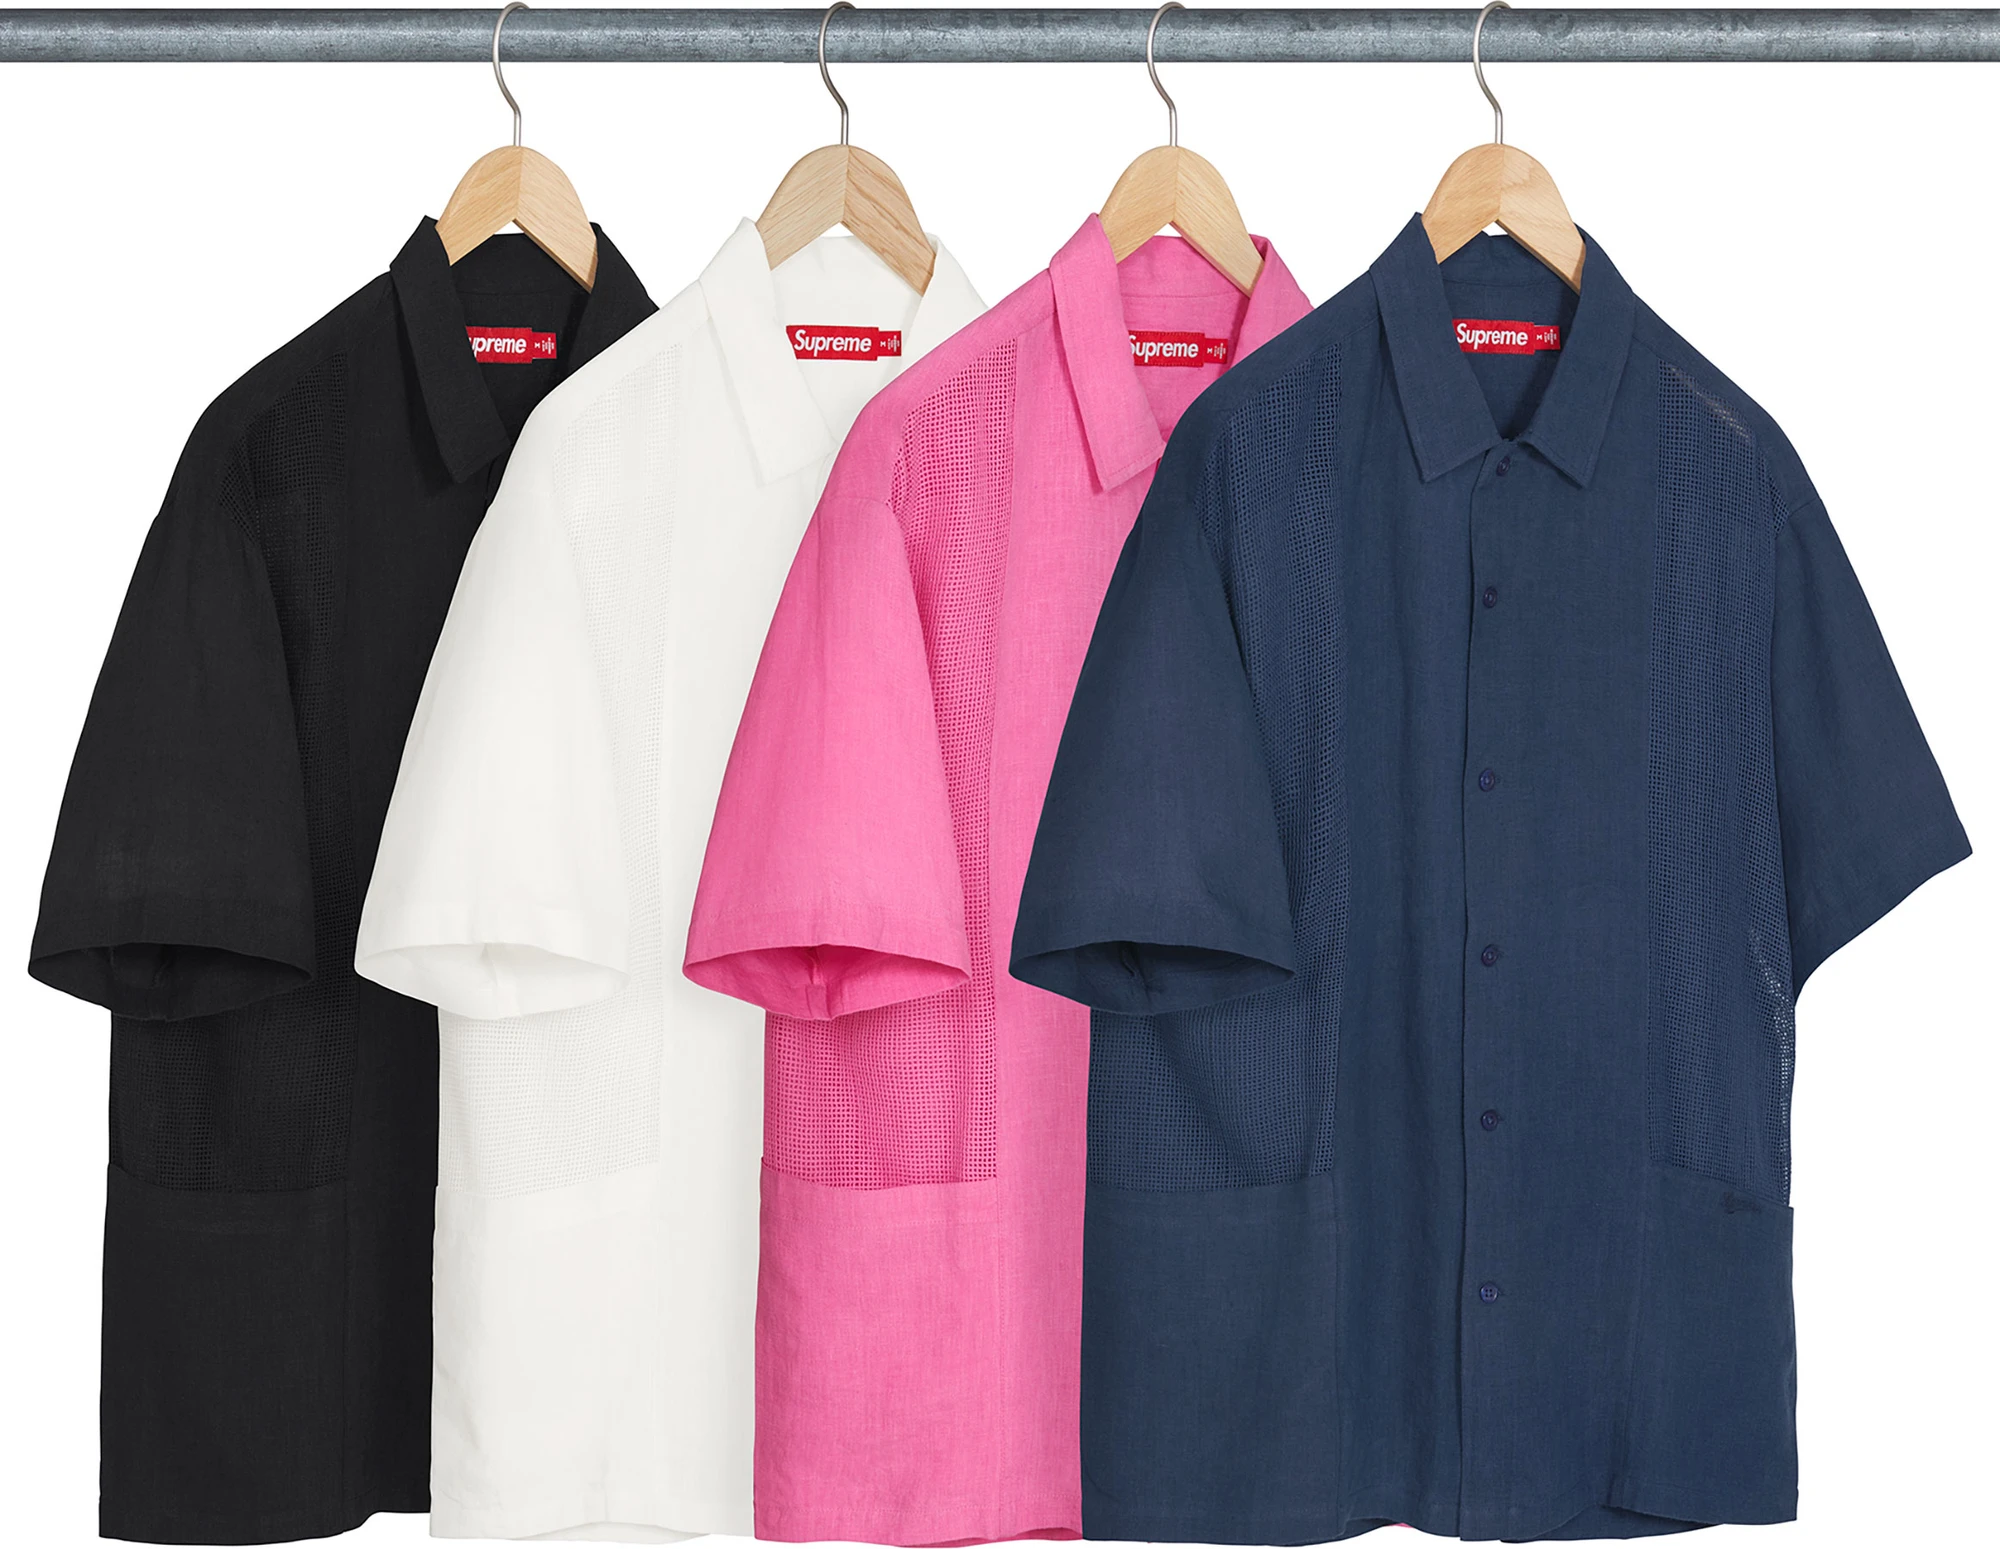 Supreme Mesh Panel Linen S/S Shirt